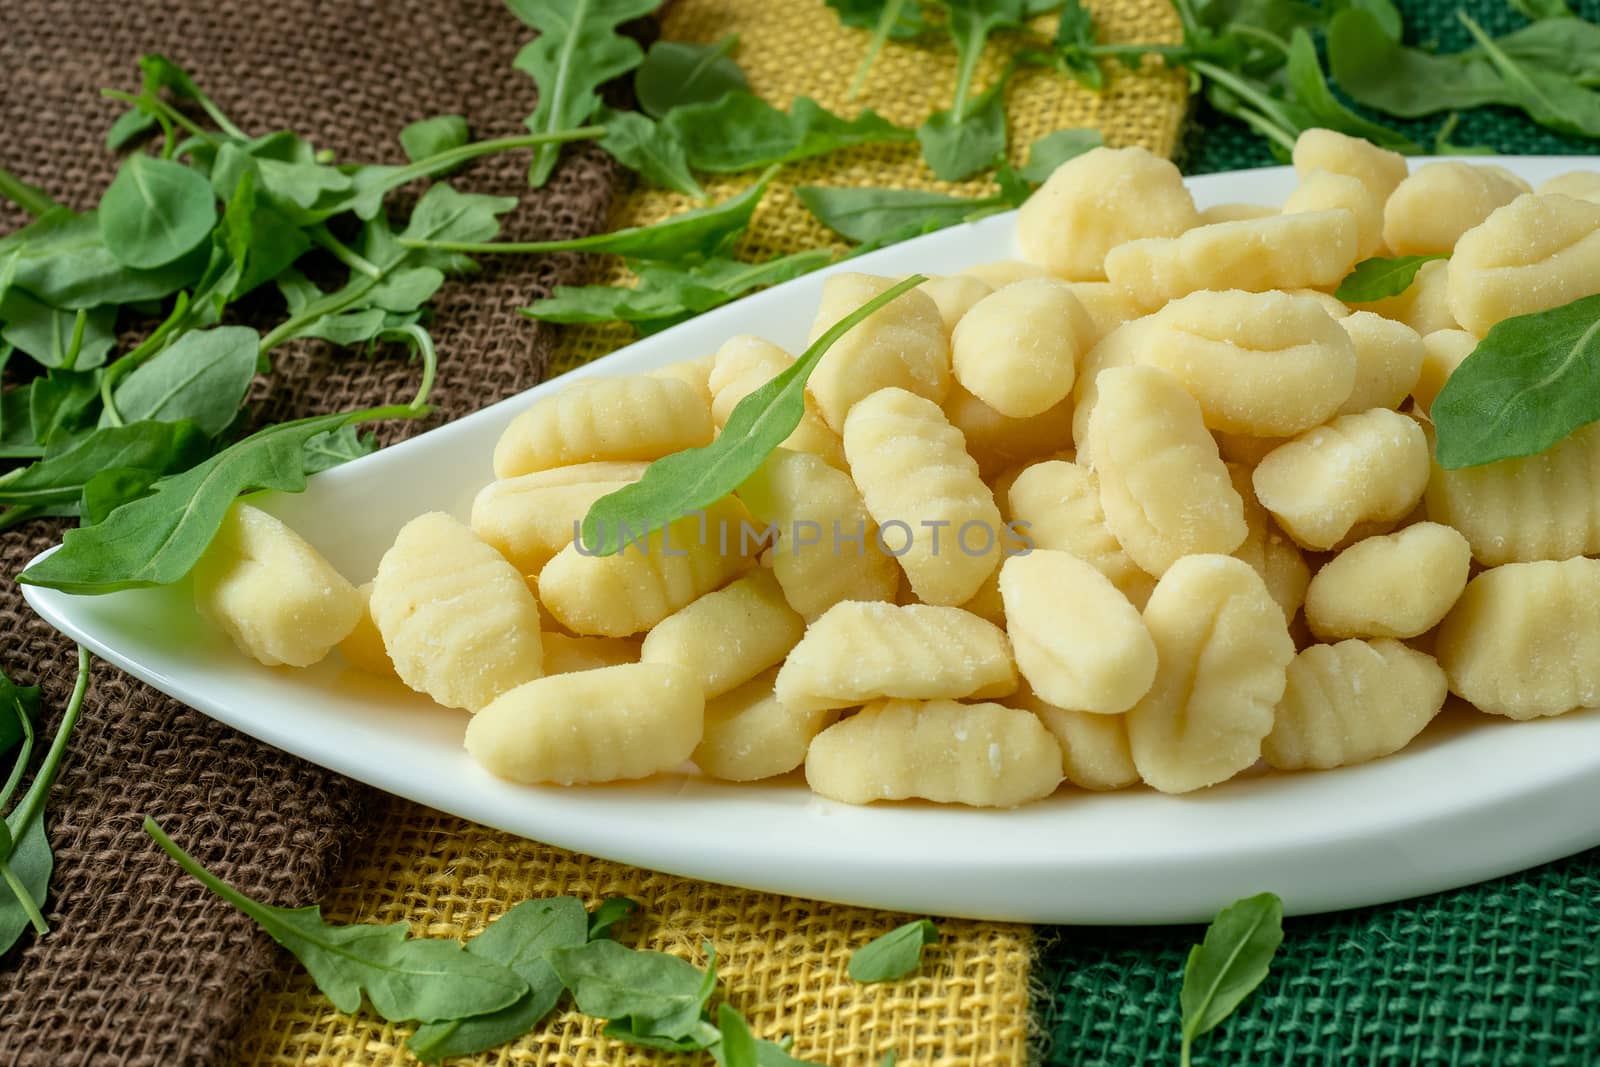 Uncooked homemade potato gnocchi in a white plate